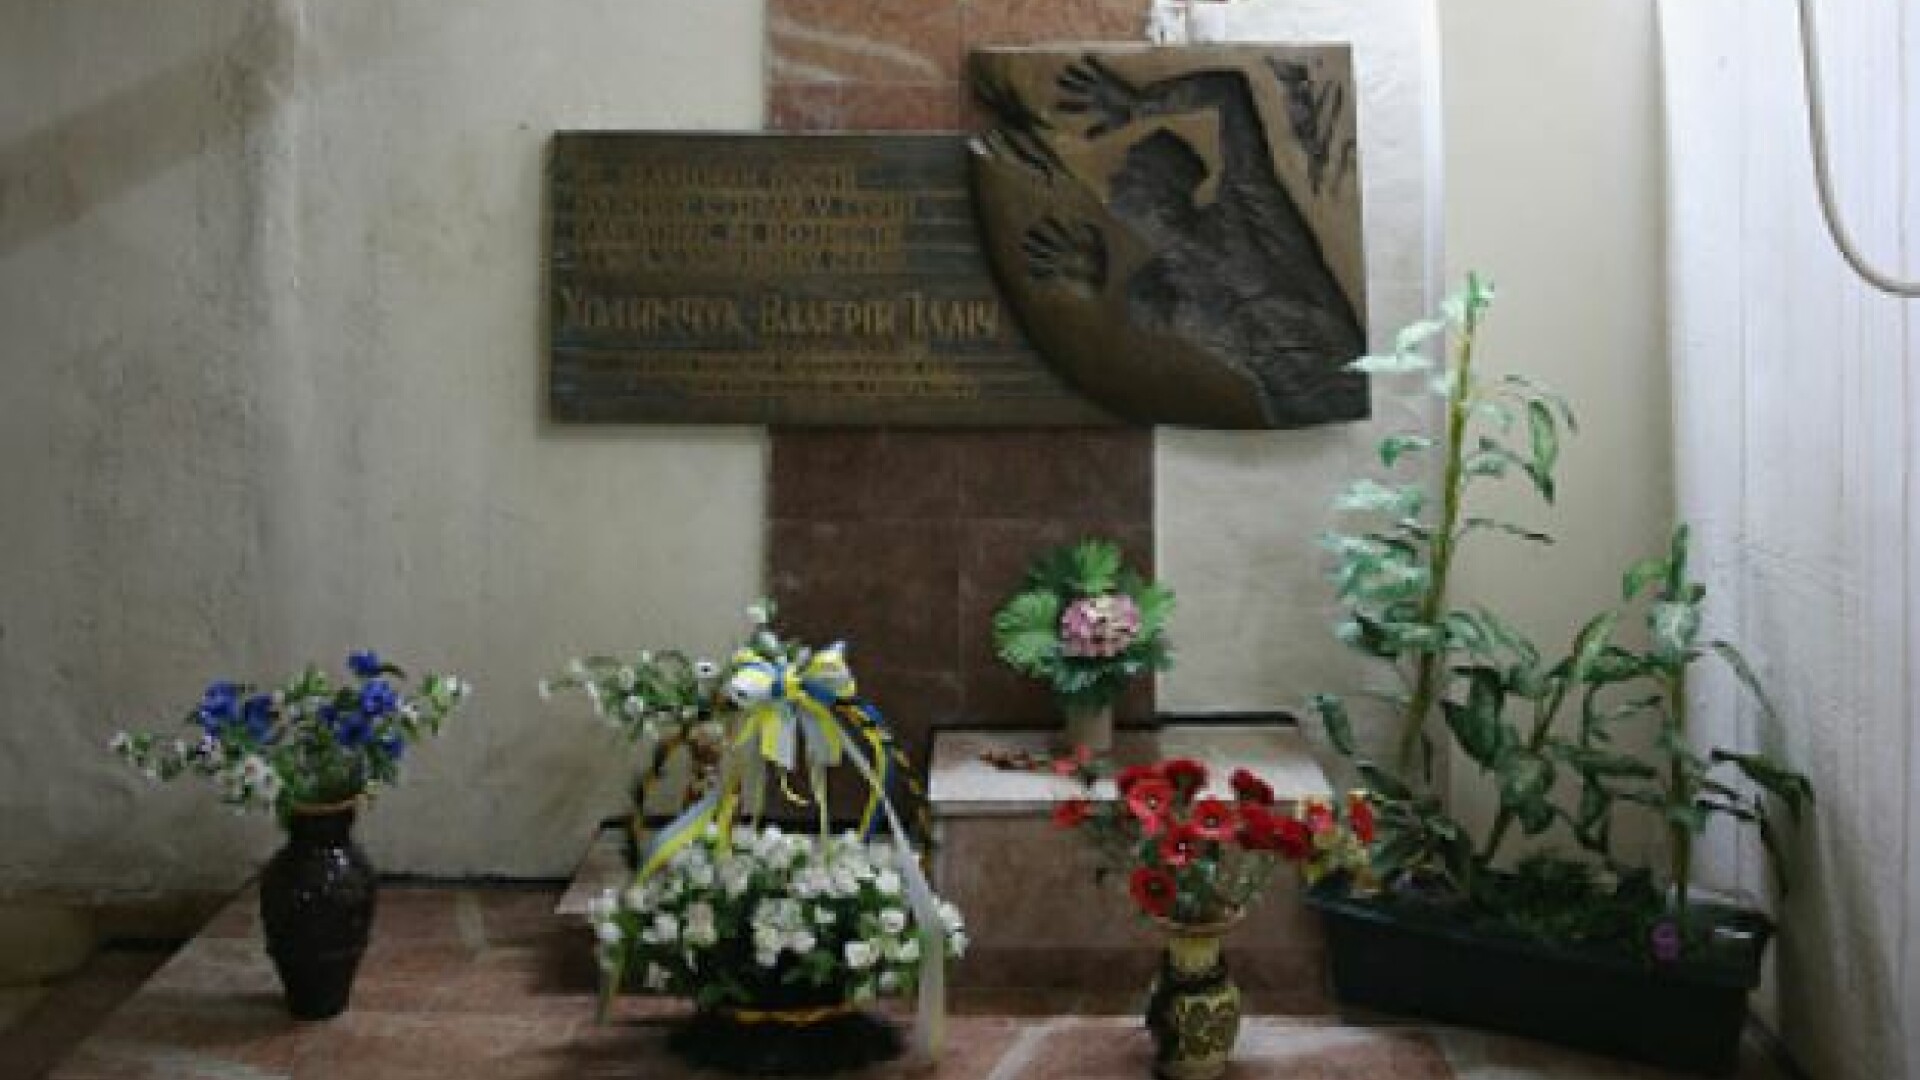 Altarul ridicat în memoria lui Valery Khodemchuk la Cernobîl